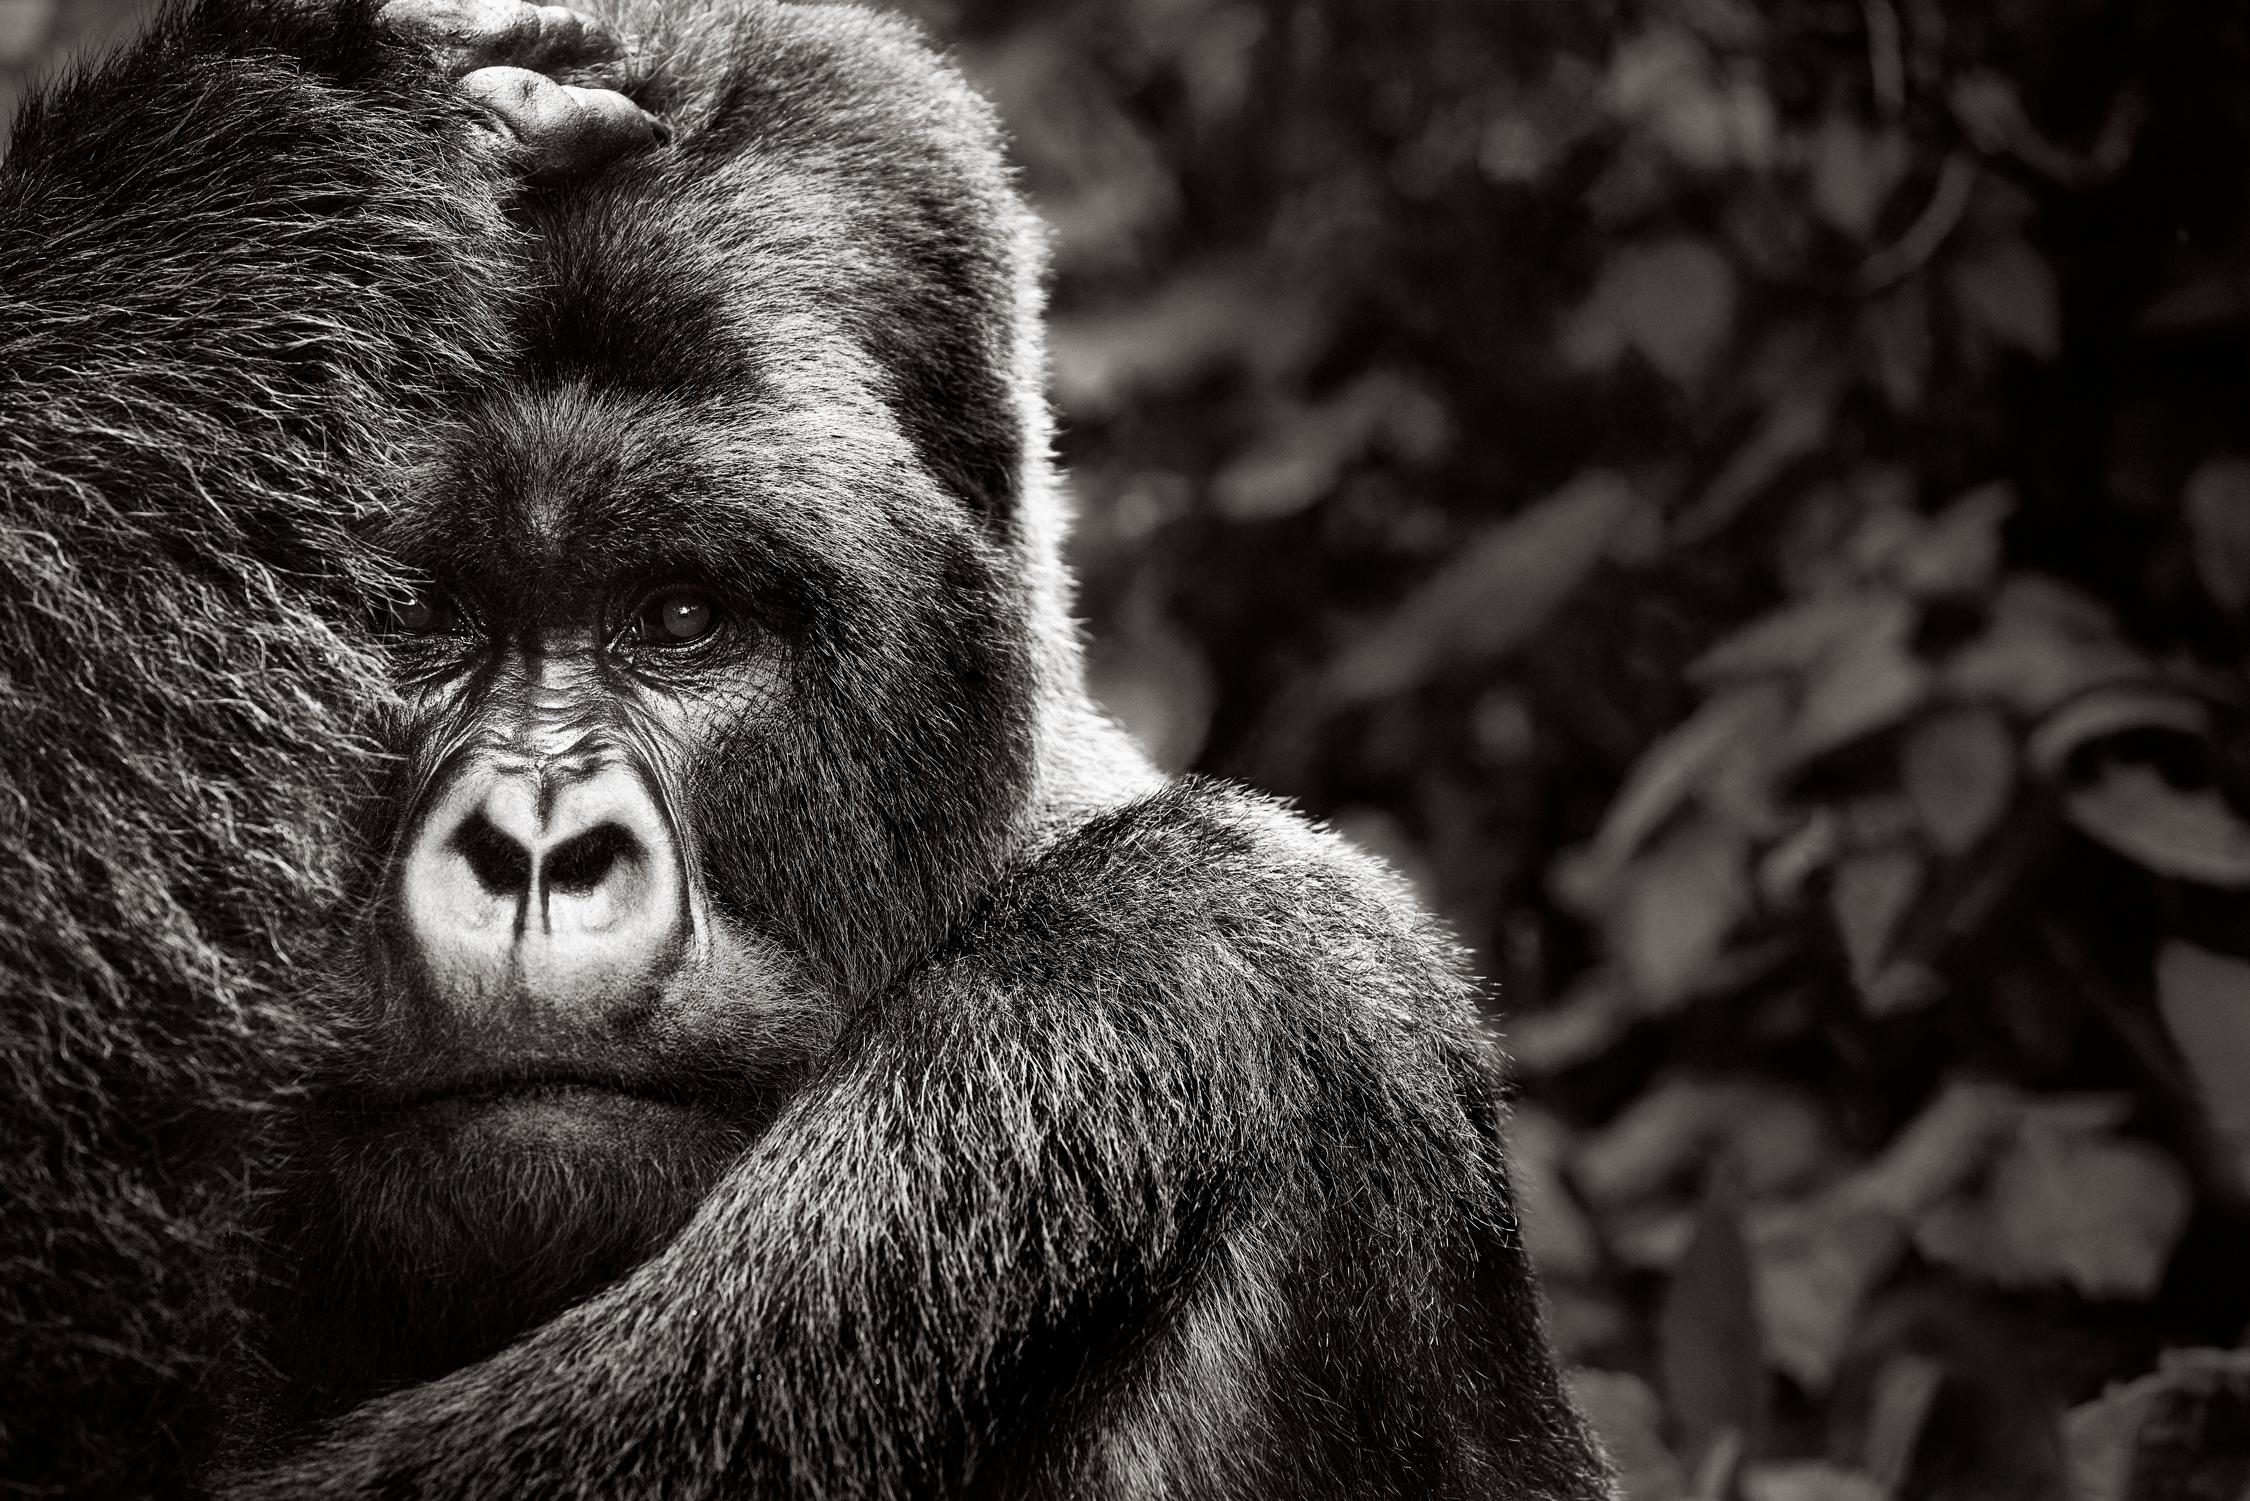 Black and White Photograph Drew Doggett - Portrait d'une Gorilla de montagne intime, surréaliste et inspirée de la mode